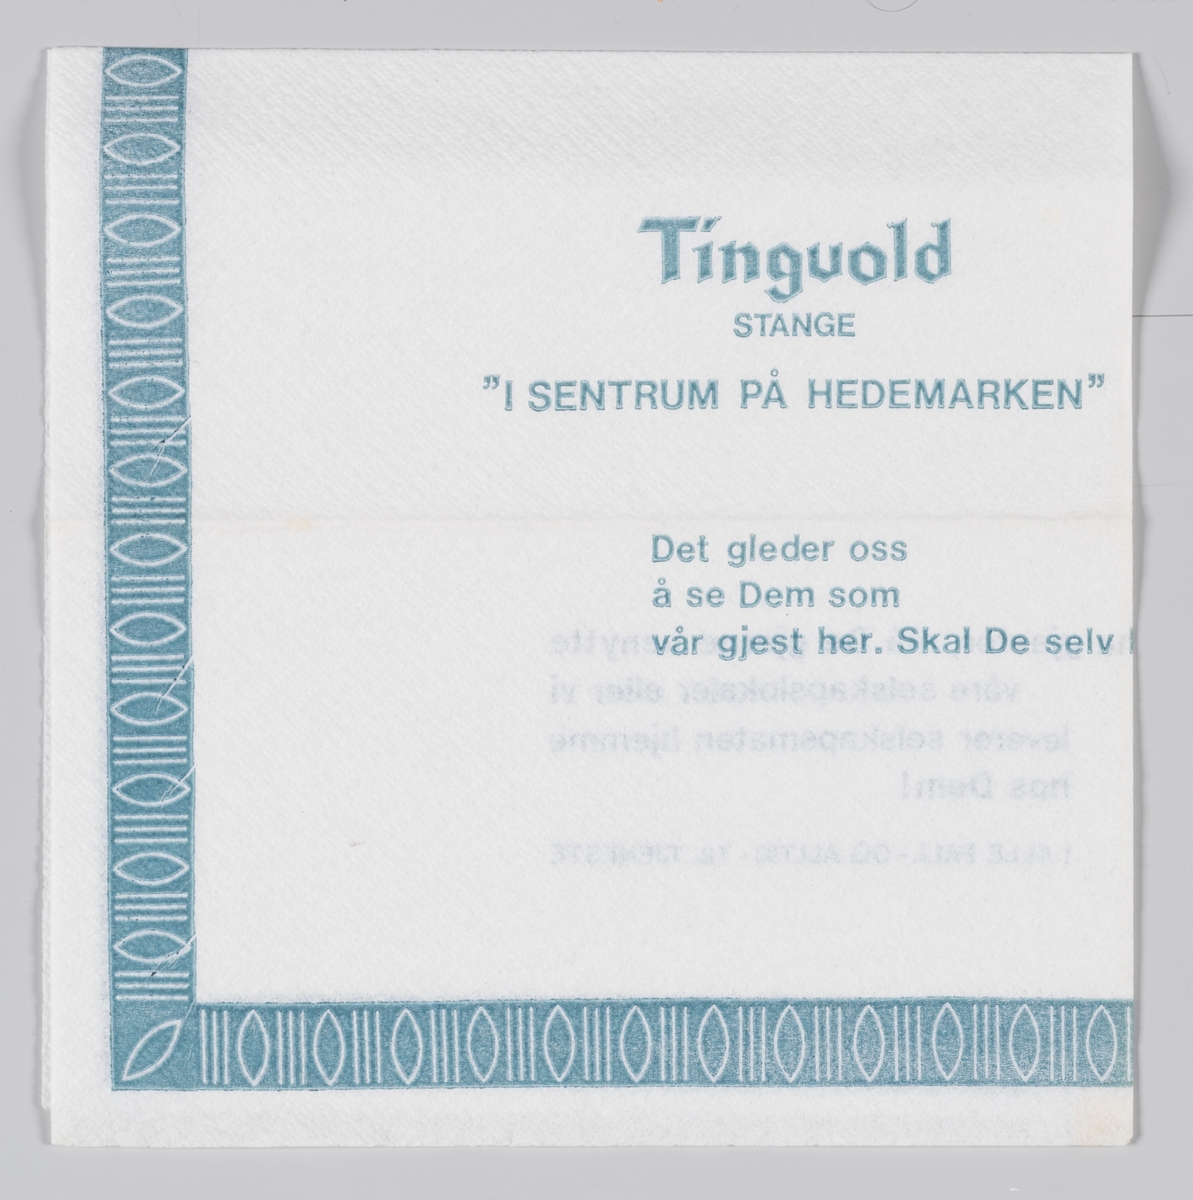 En mønsterbord langs kanten og en reklame for Tingvold restaurant Stange på Hedmarken.